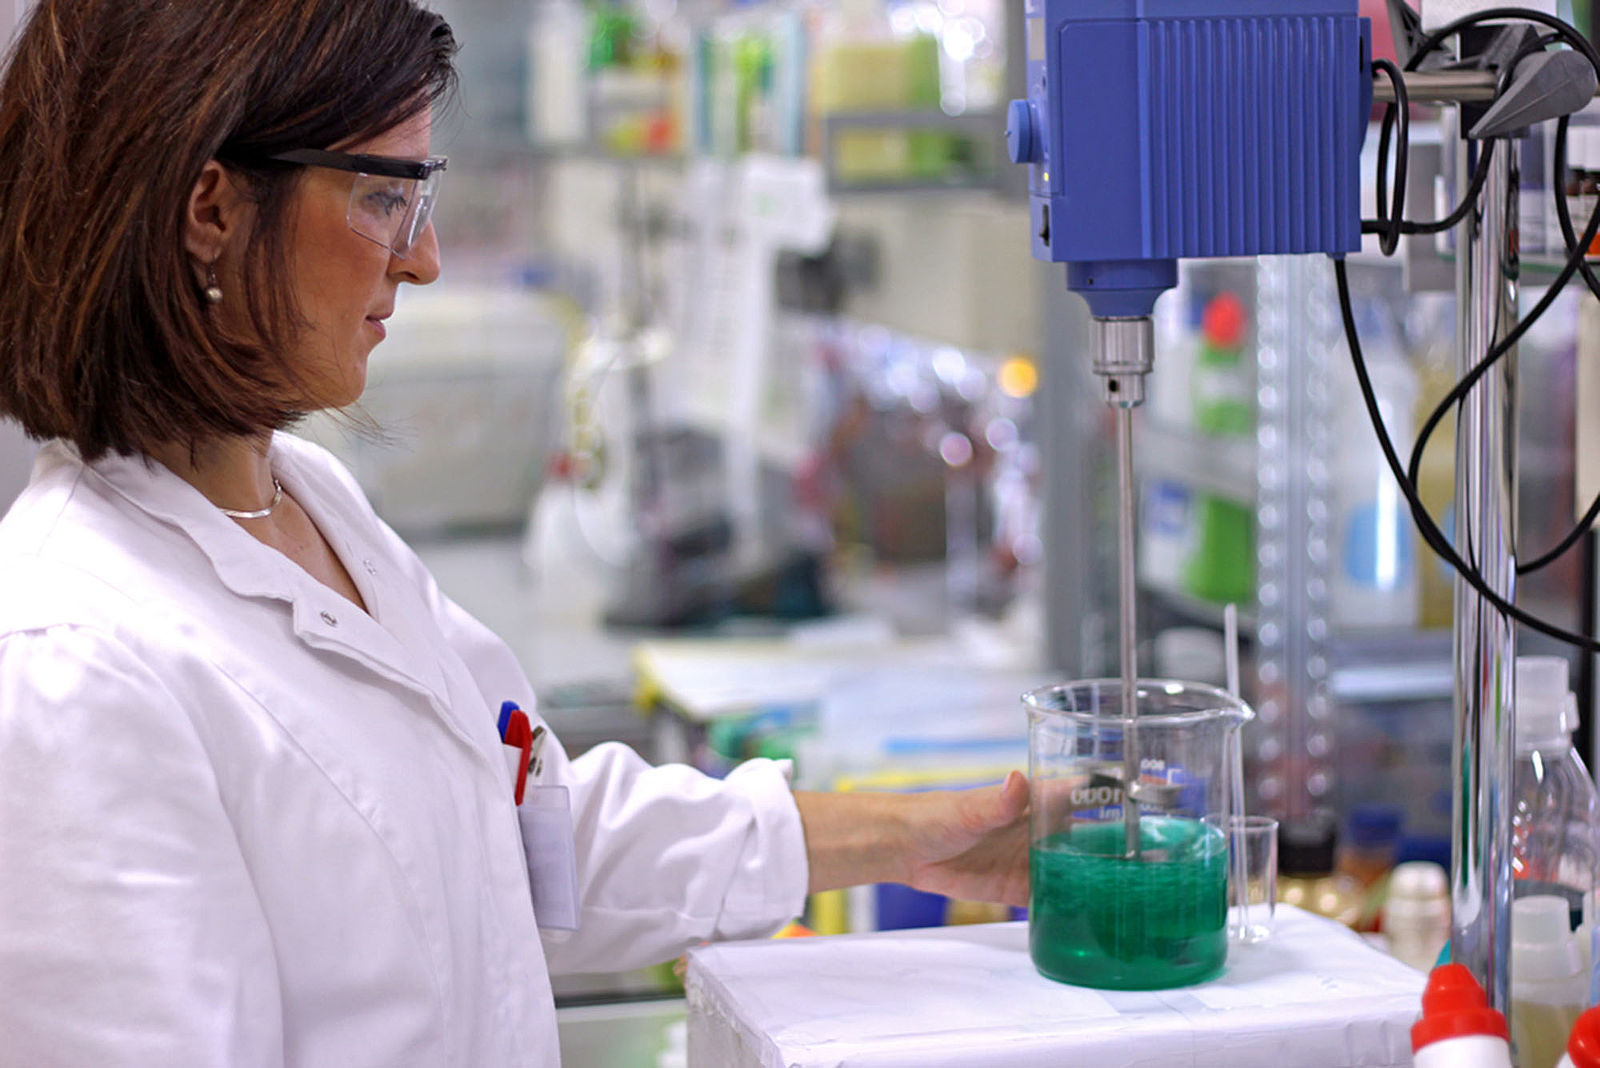 Eine Frau im Labor stellt einen Glasbehälter mit Flüssigkeit auf ein Arbeitsgerät.